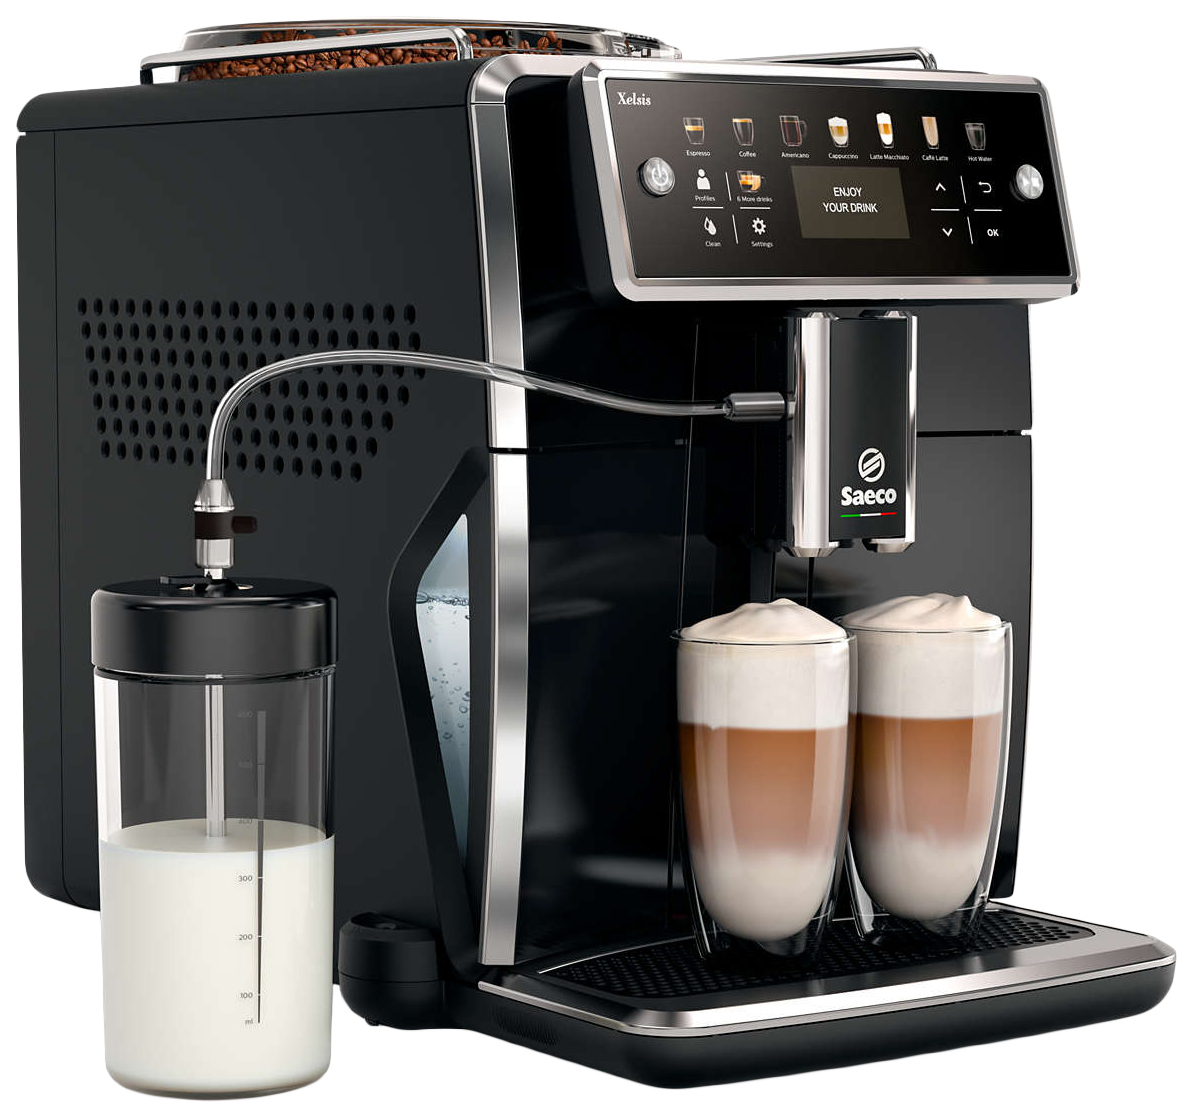 Кофемашина автоматическая Saeco Xelsis SM7580/00 Black автоматический капучинатор емкость для молока xs600010 дубль